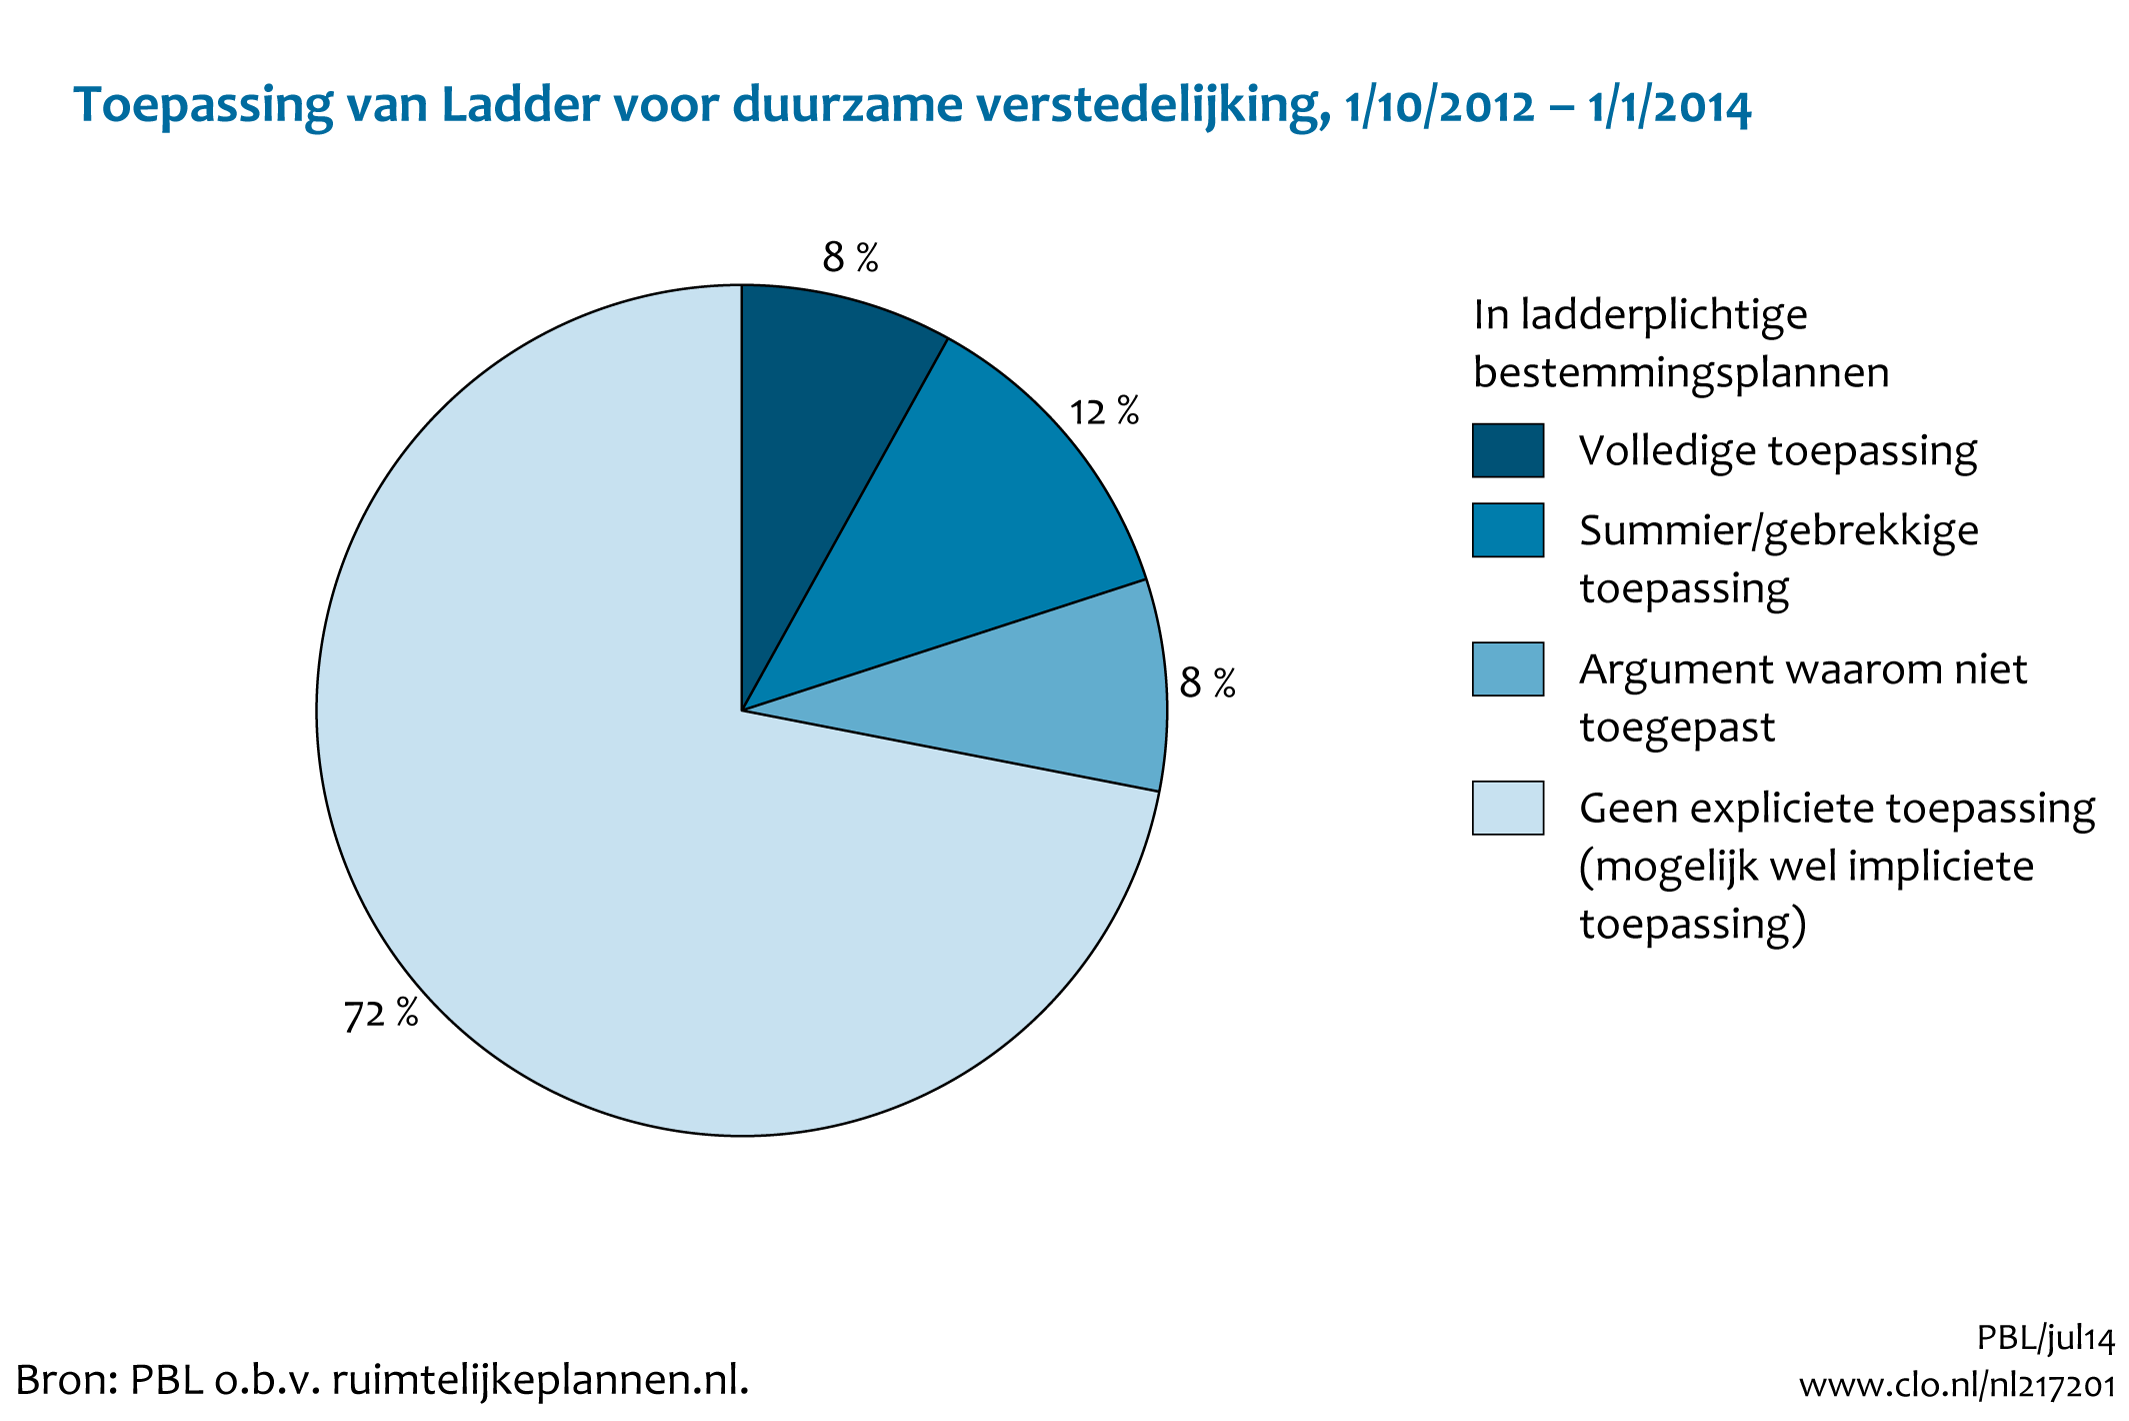 Figuur Toepassing van Ladder voor duurzame verstedelijking, 1-10-2012 tot 1-1-2014. In de rest van de tekst wordt deze figuur uitgebreider uitgelegd.